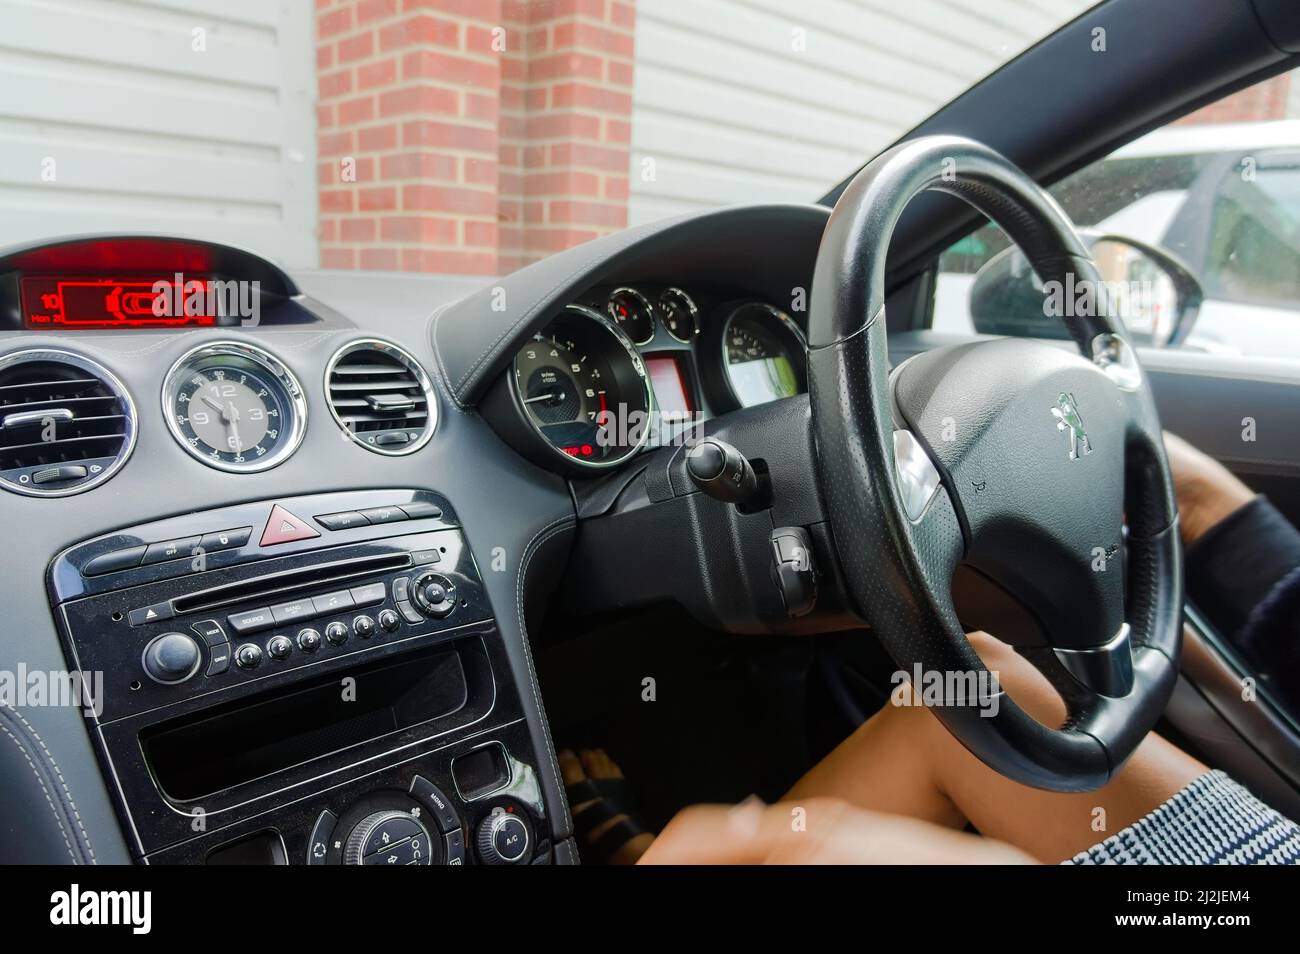 Innenraum des Peugeot-Sportwagens mit einer Frau am Steuer, aber ohne Gesichtsausdruck. Stockfoto